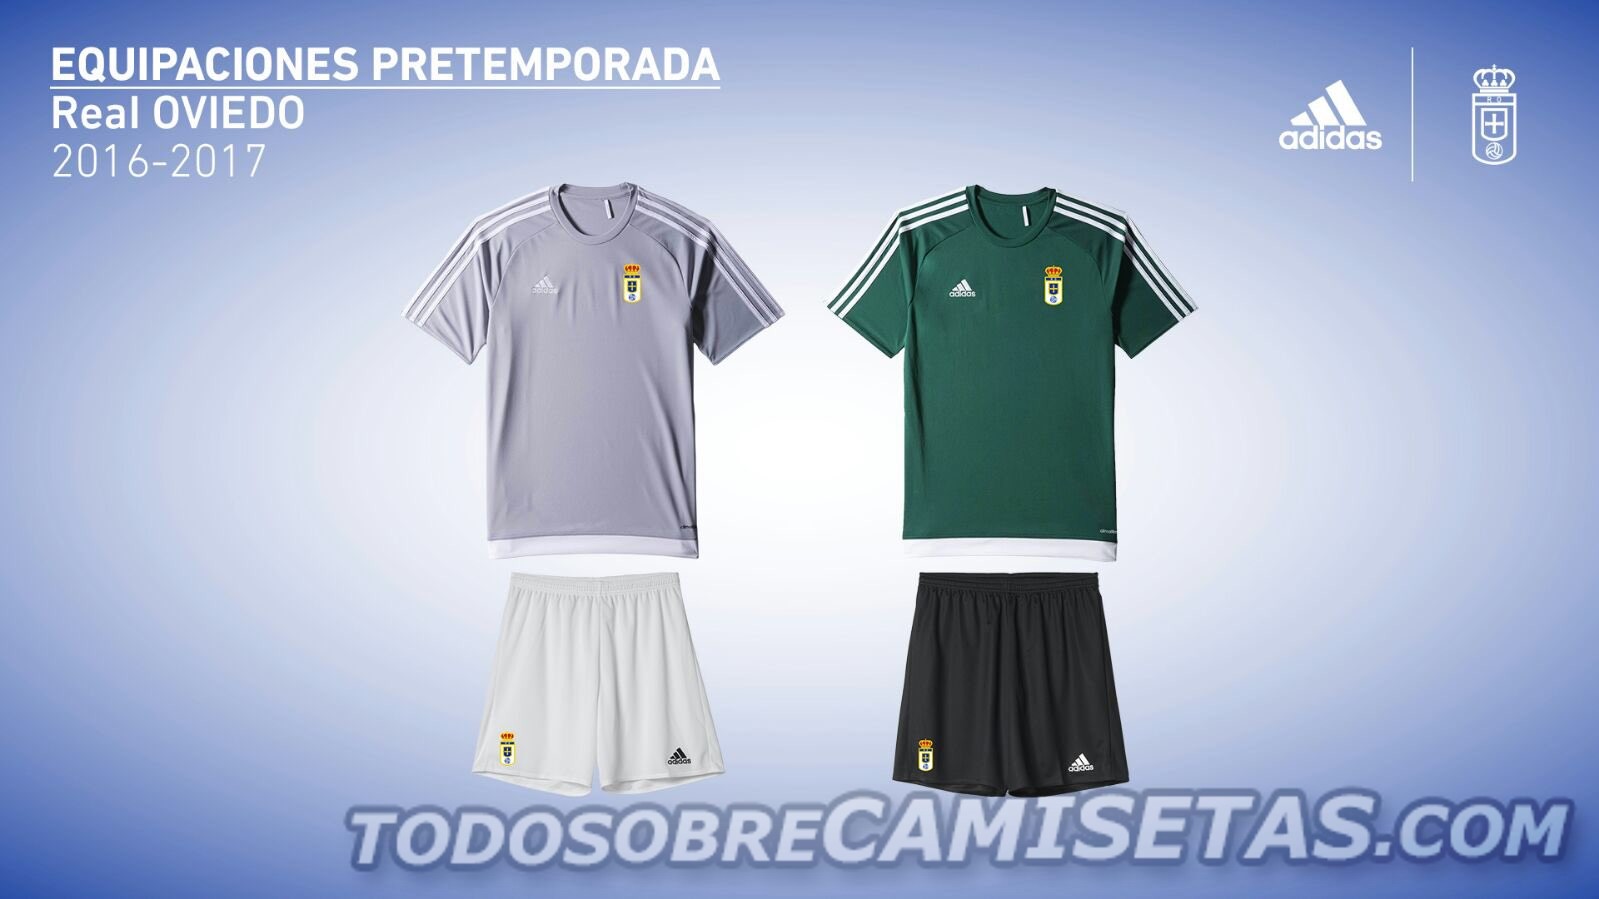 Uniformes Adidas del Real Oviedo 2016-17